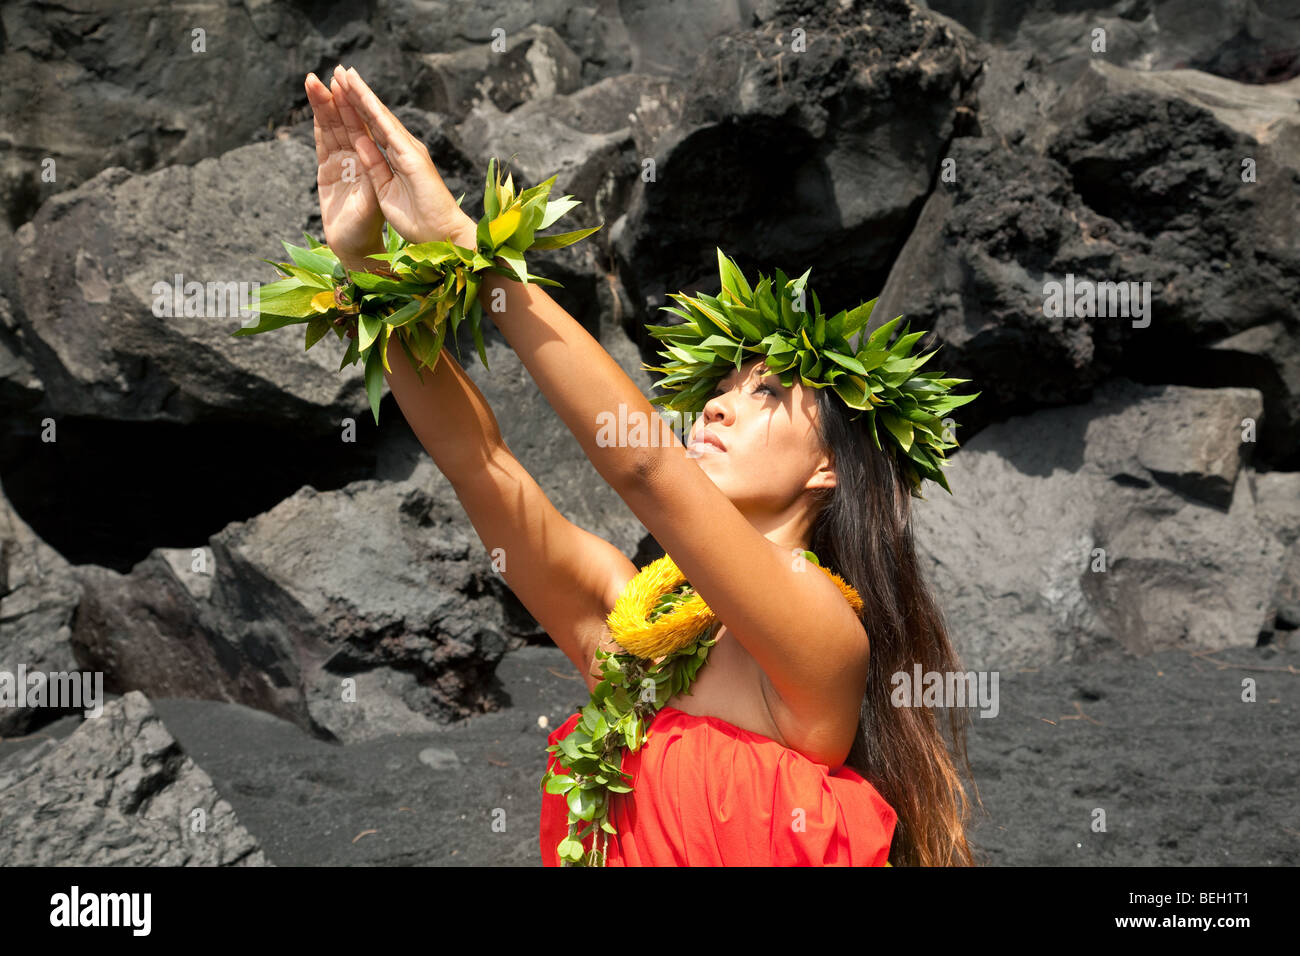 Jeune femme hawaïenne traditionnelle portant des vêtements de hula. Banque D'Images